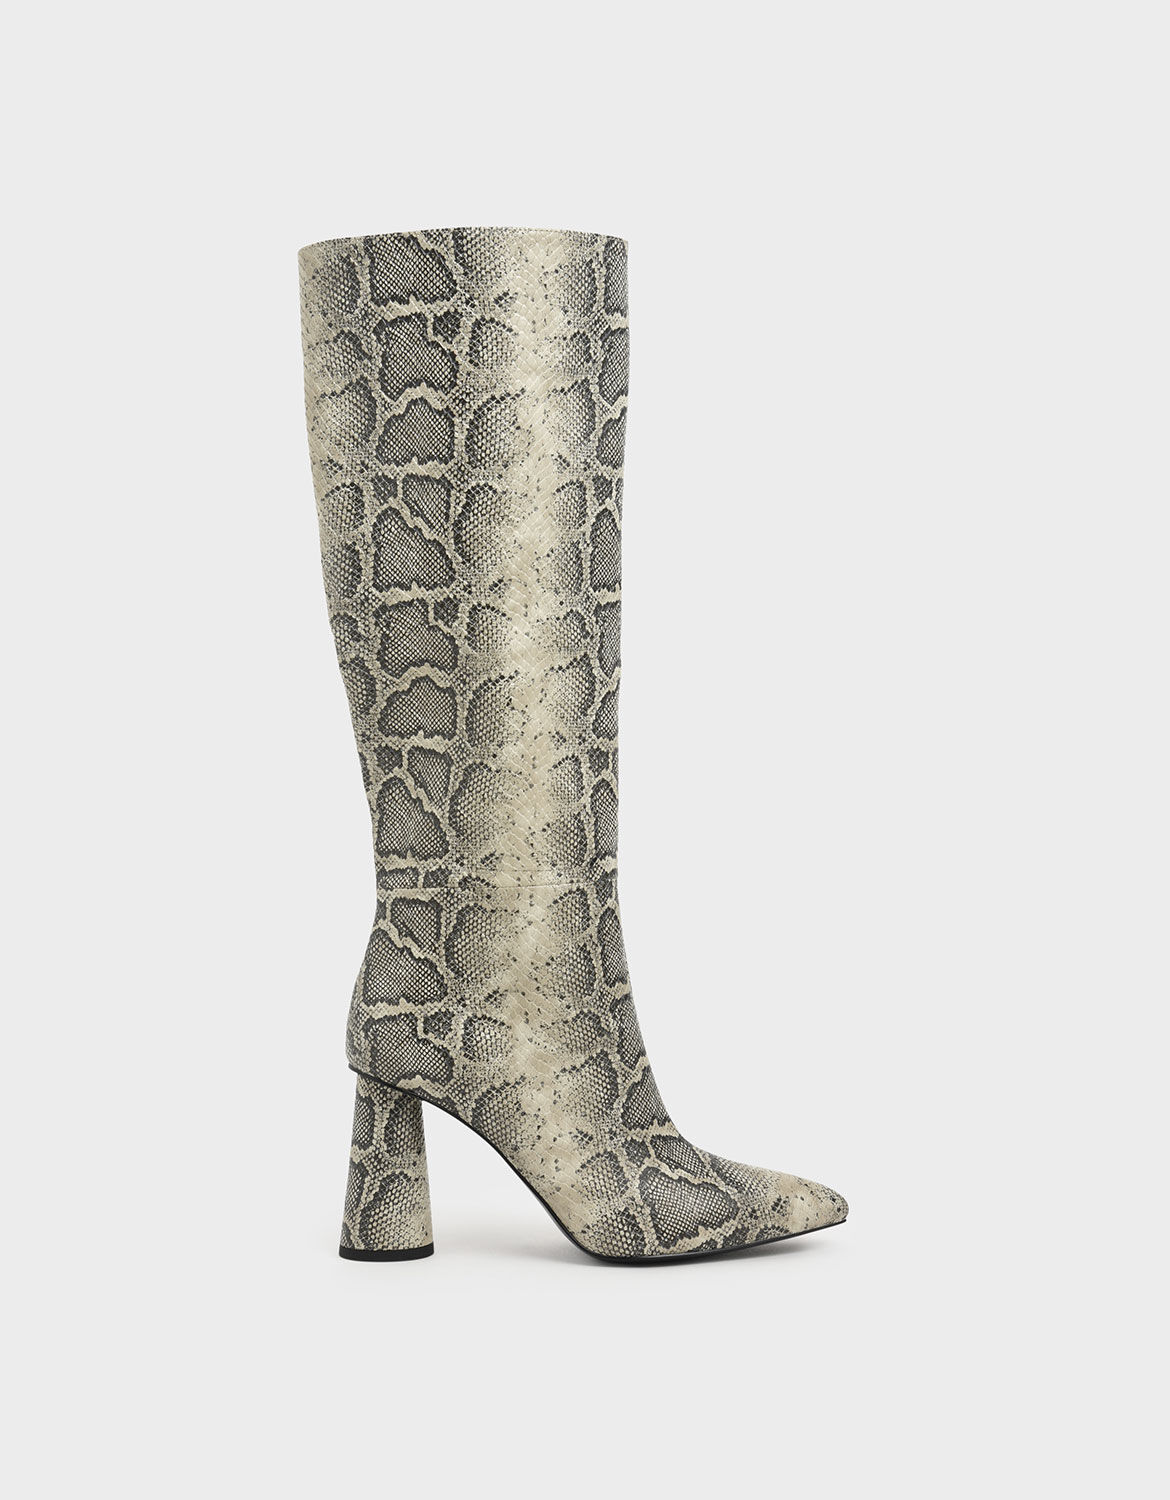 grey heeled boots